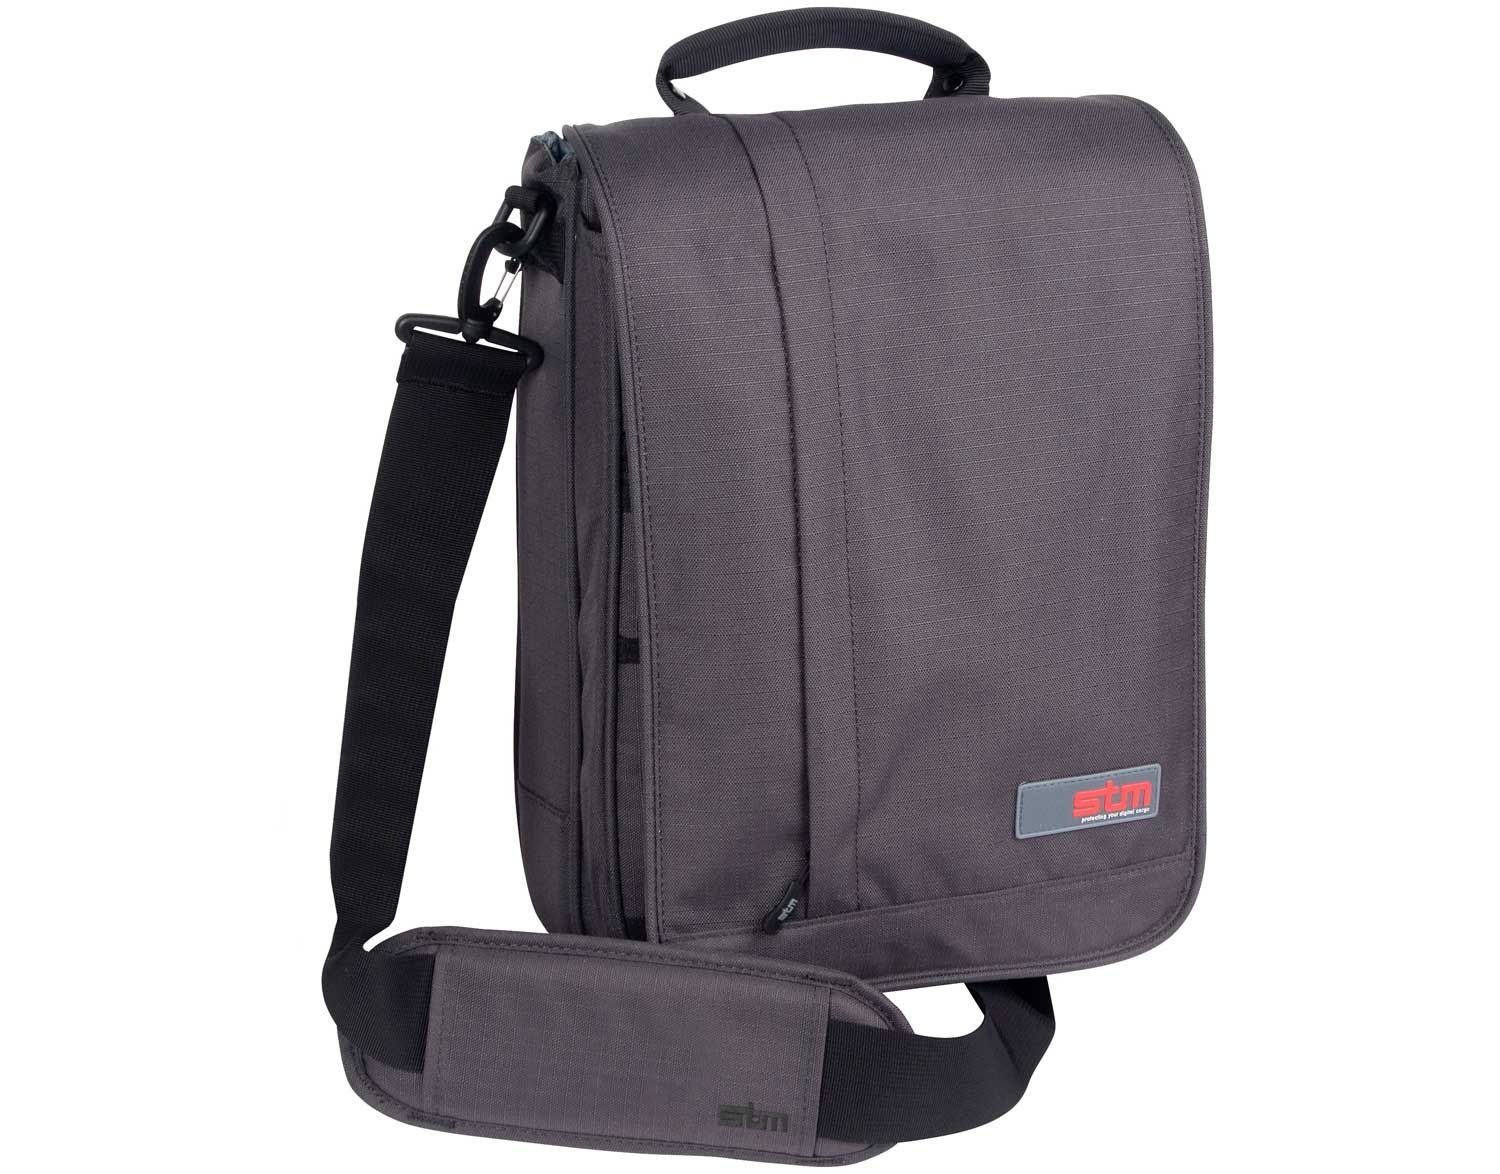 STM Alley Shoulder Bag for MacBook (Carbon)